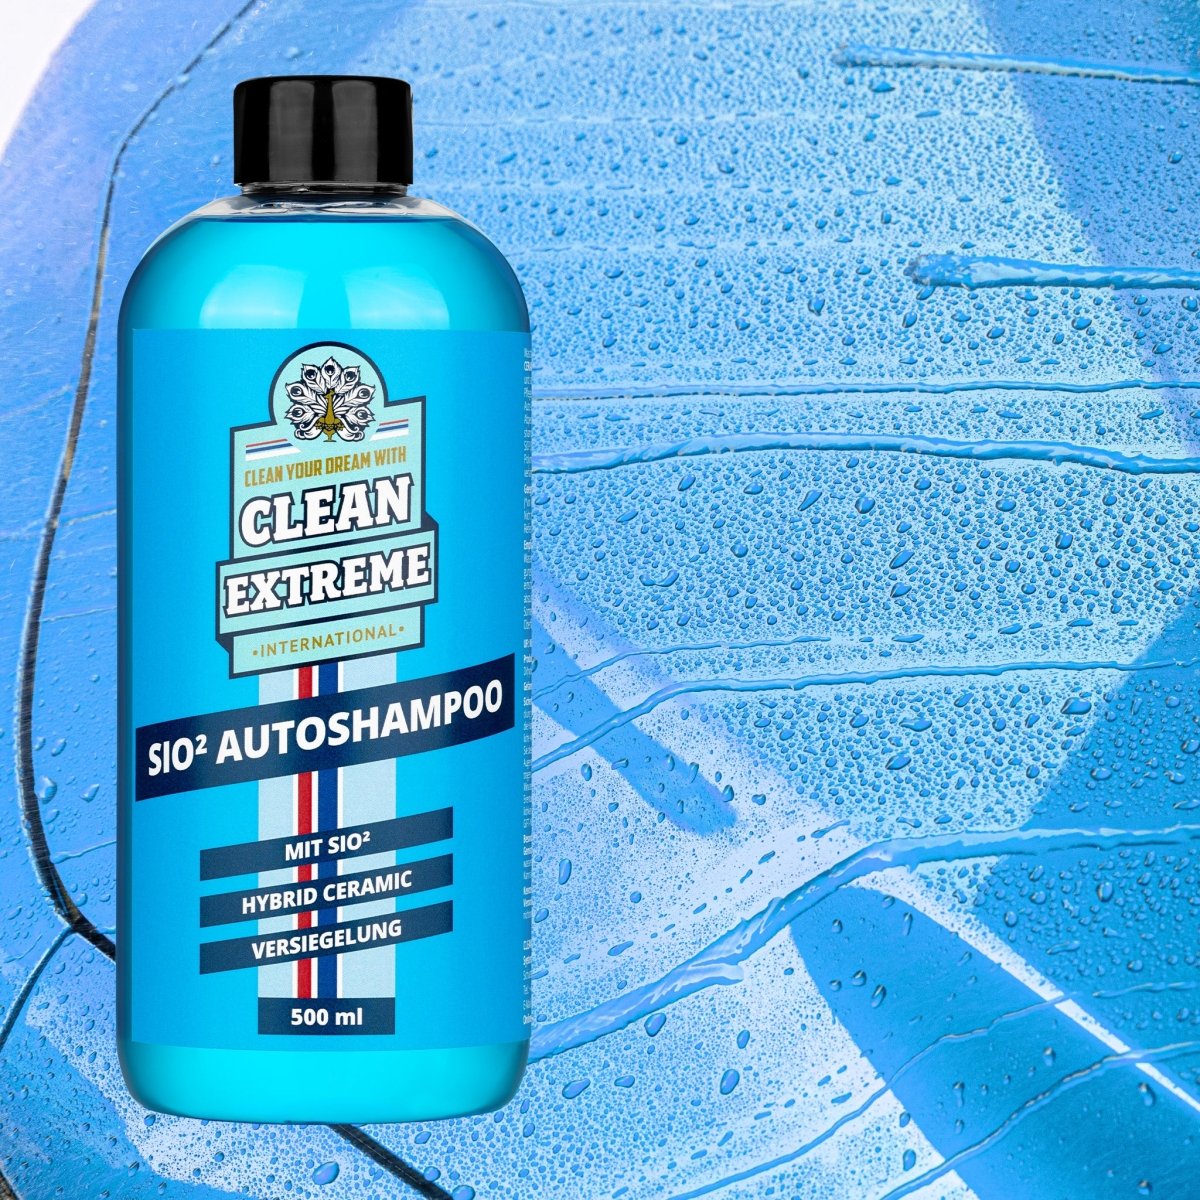 SIO² Autoshampoo Konzentrat - 0,5 Liter + MICRO Auto-Waschhandschuh DUO Set - CLEANEXTREME